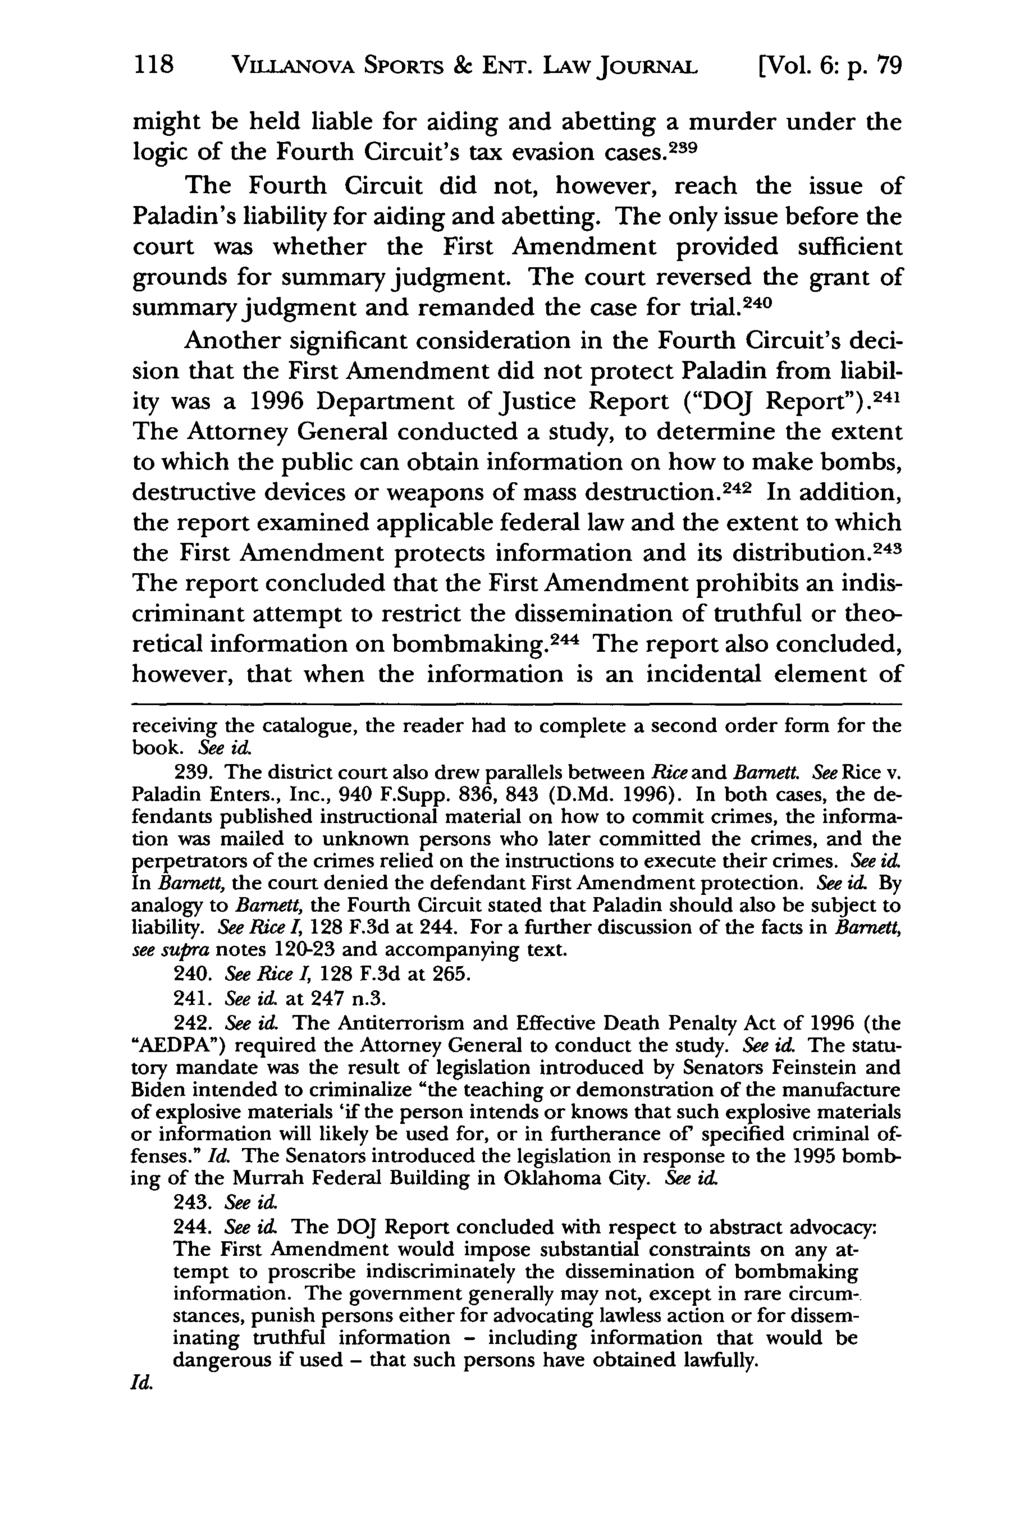 118 VLANOVA Jeffrey S. Moorad SPORTS Sports Law & ENT. Journal, LAw Vol. 6, JOuRNAL Iss. 1 [1999], Art. 5 [Vol. 6: p.